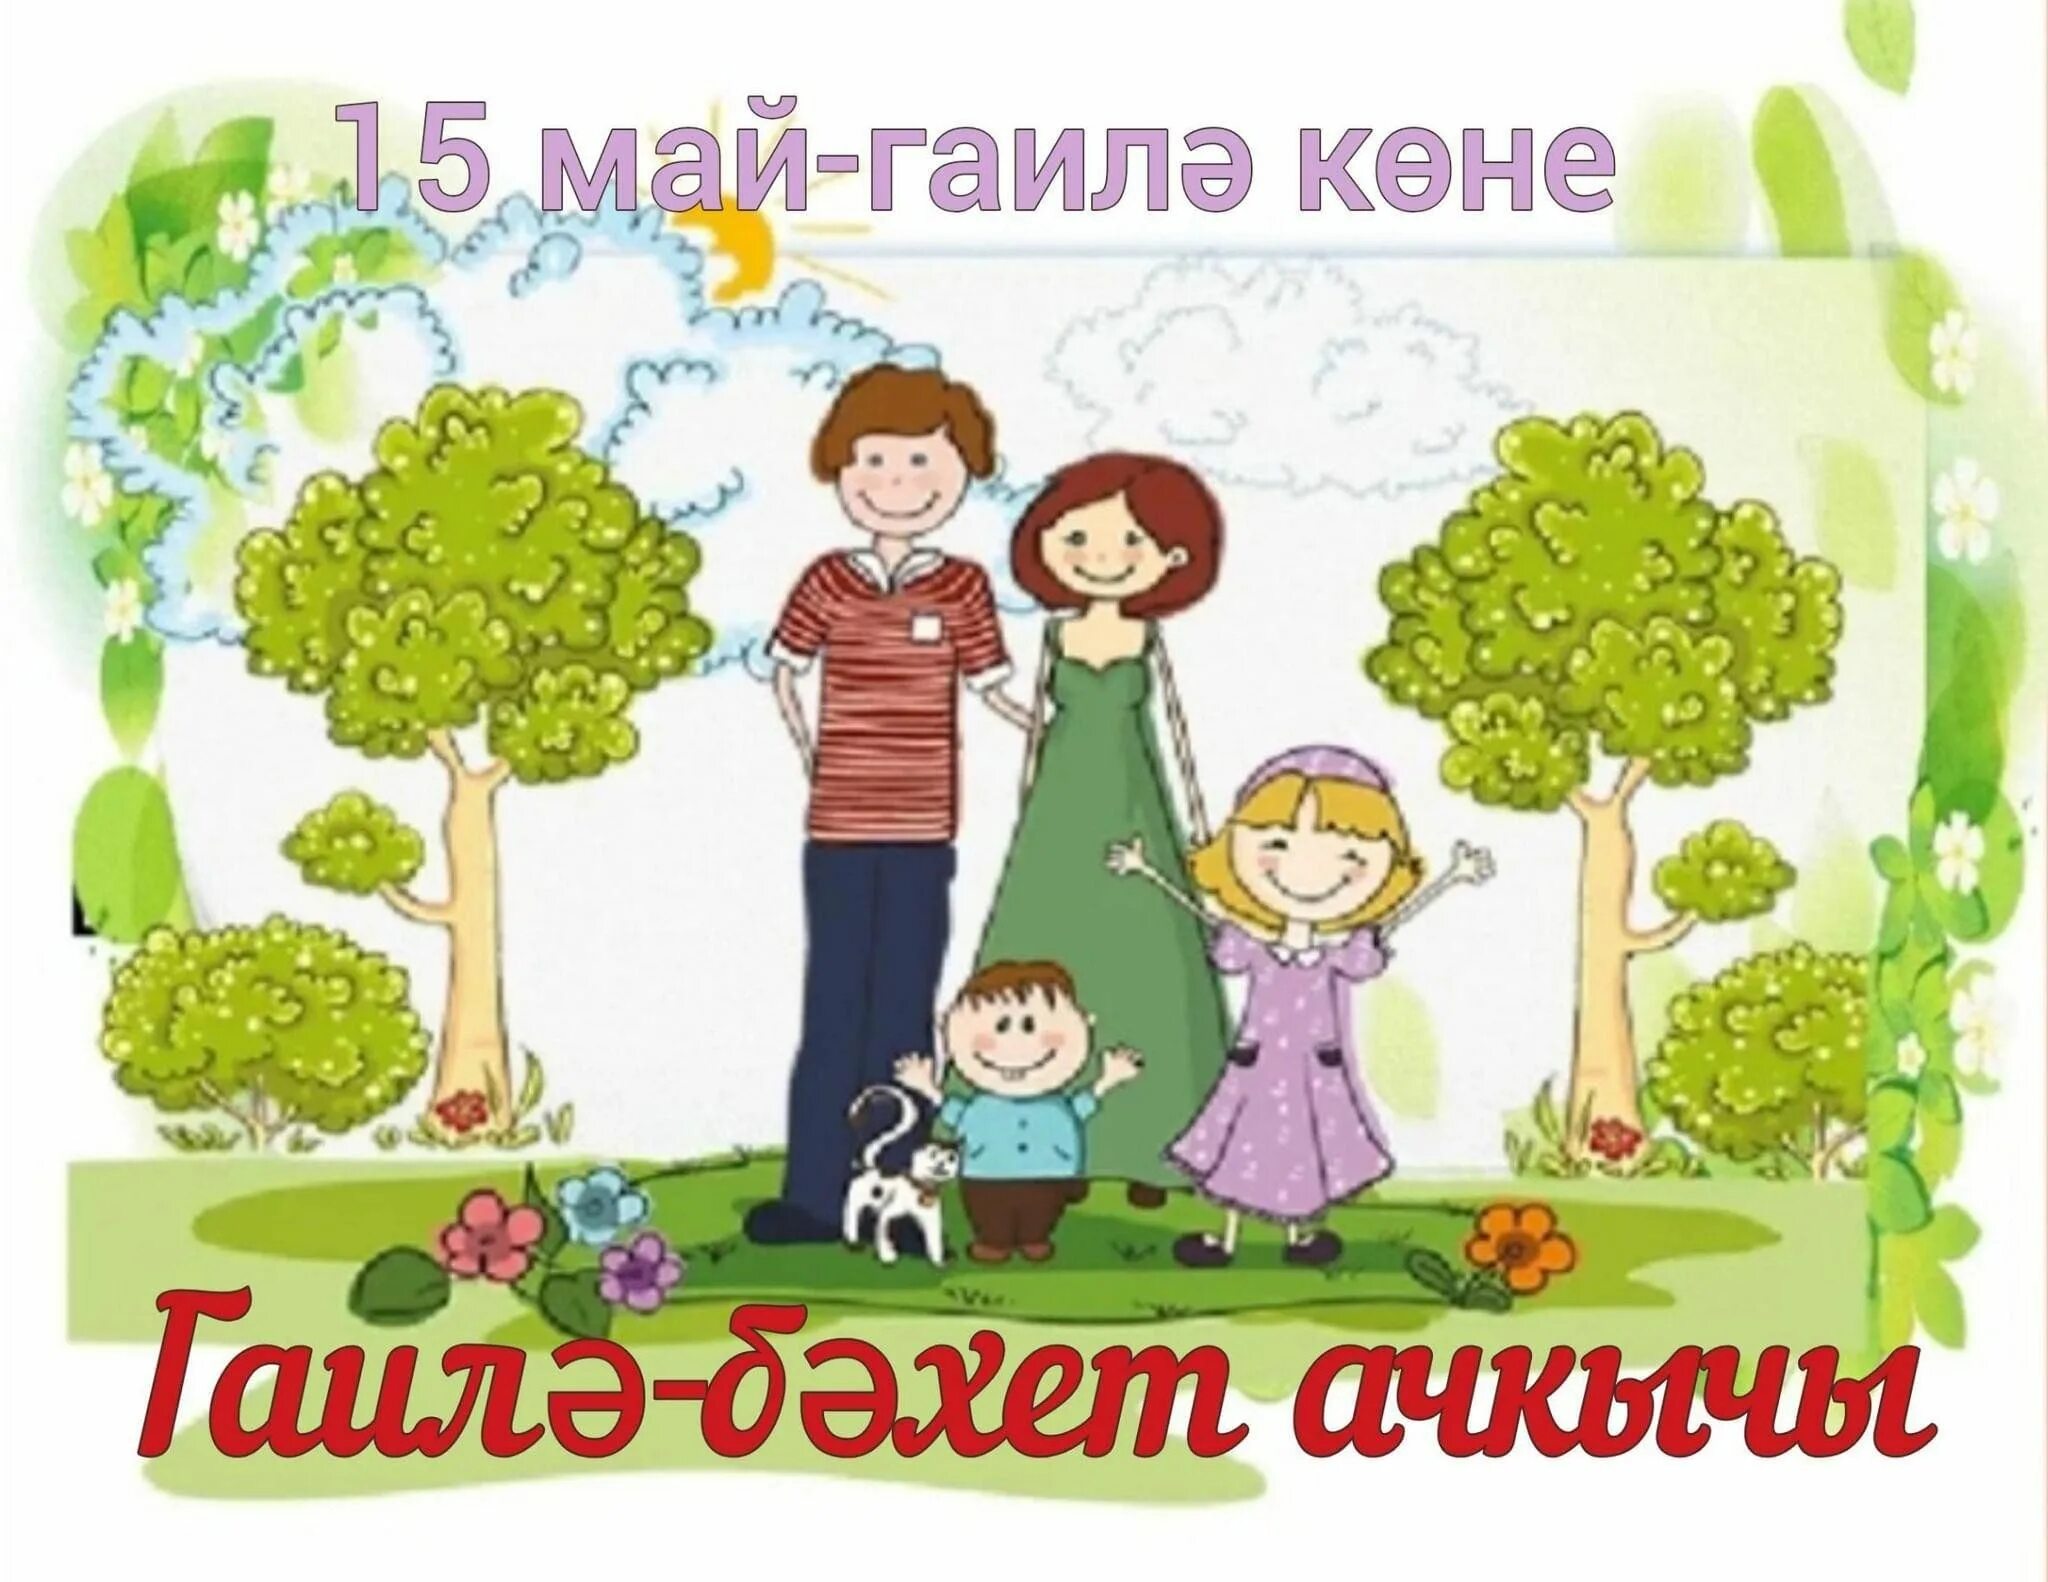 Время 15 мая. Плакат ко Дню семьи 15 мая. 15 Май Гаилэ коне. День семьи 15 мая открытки. 15 Мая Международный день семьи картинки для детей.